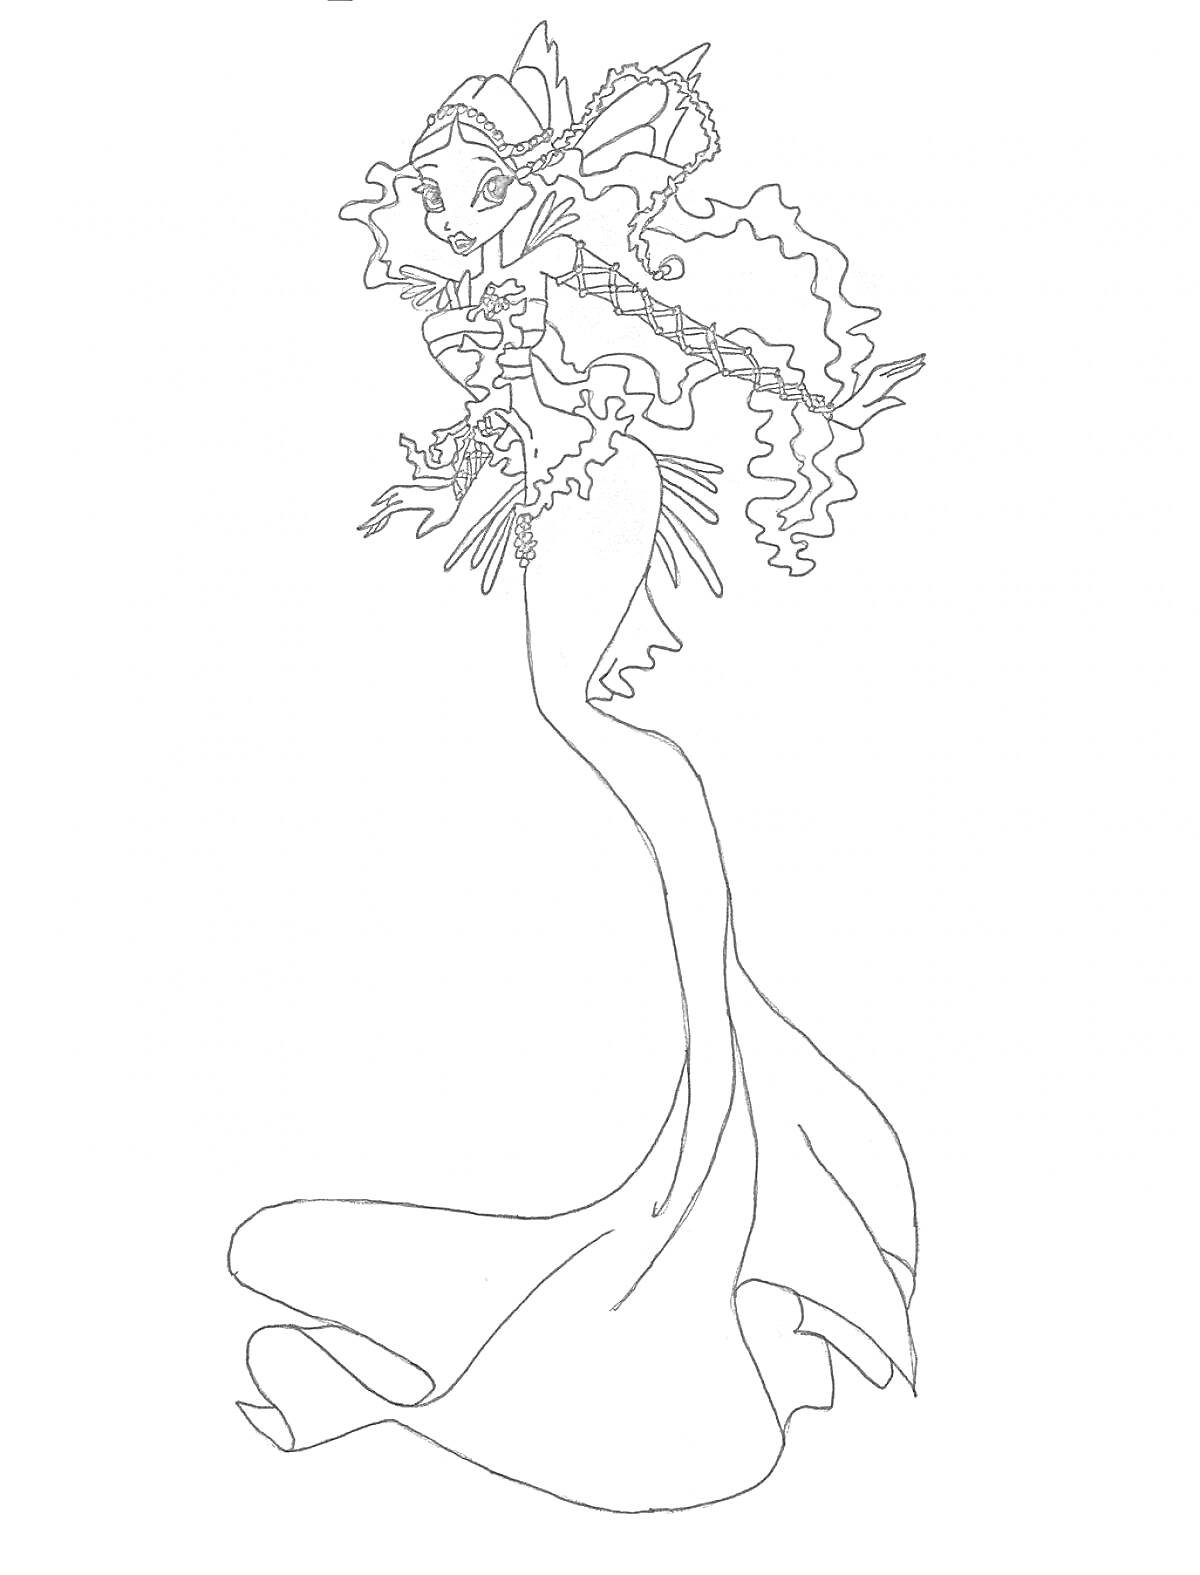 Раскраска Русалка из Винкс с длинными вьющимися волосами и деталями костюма